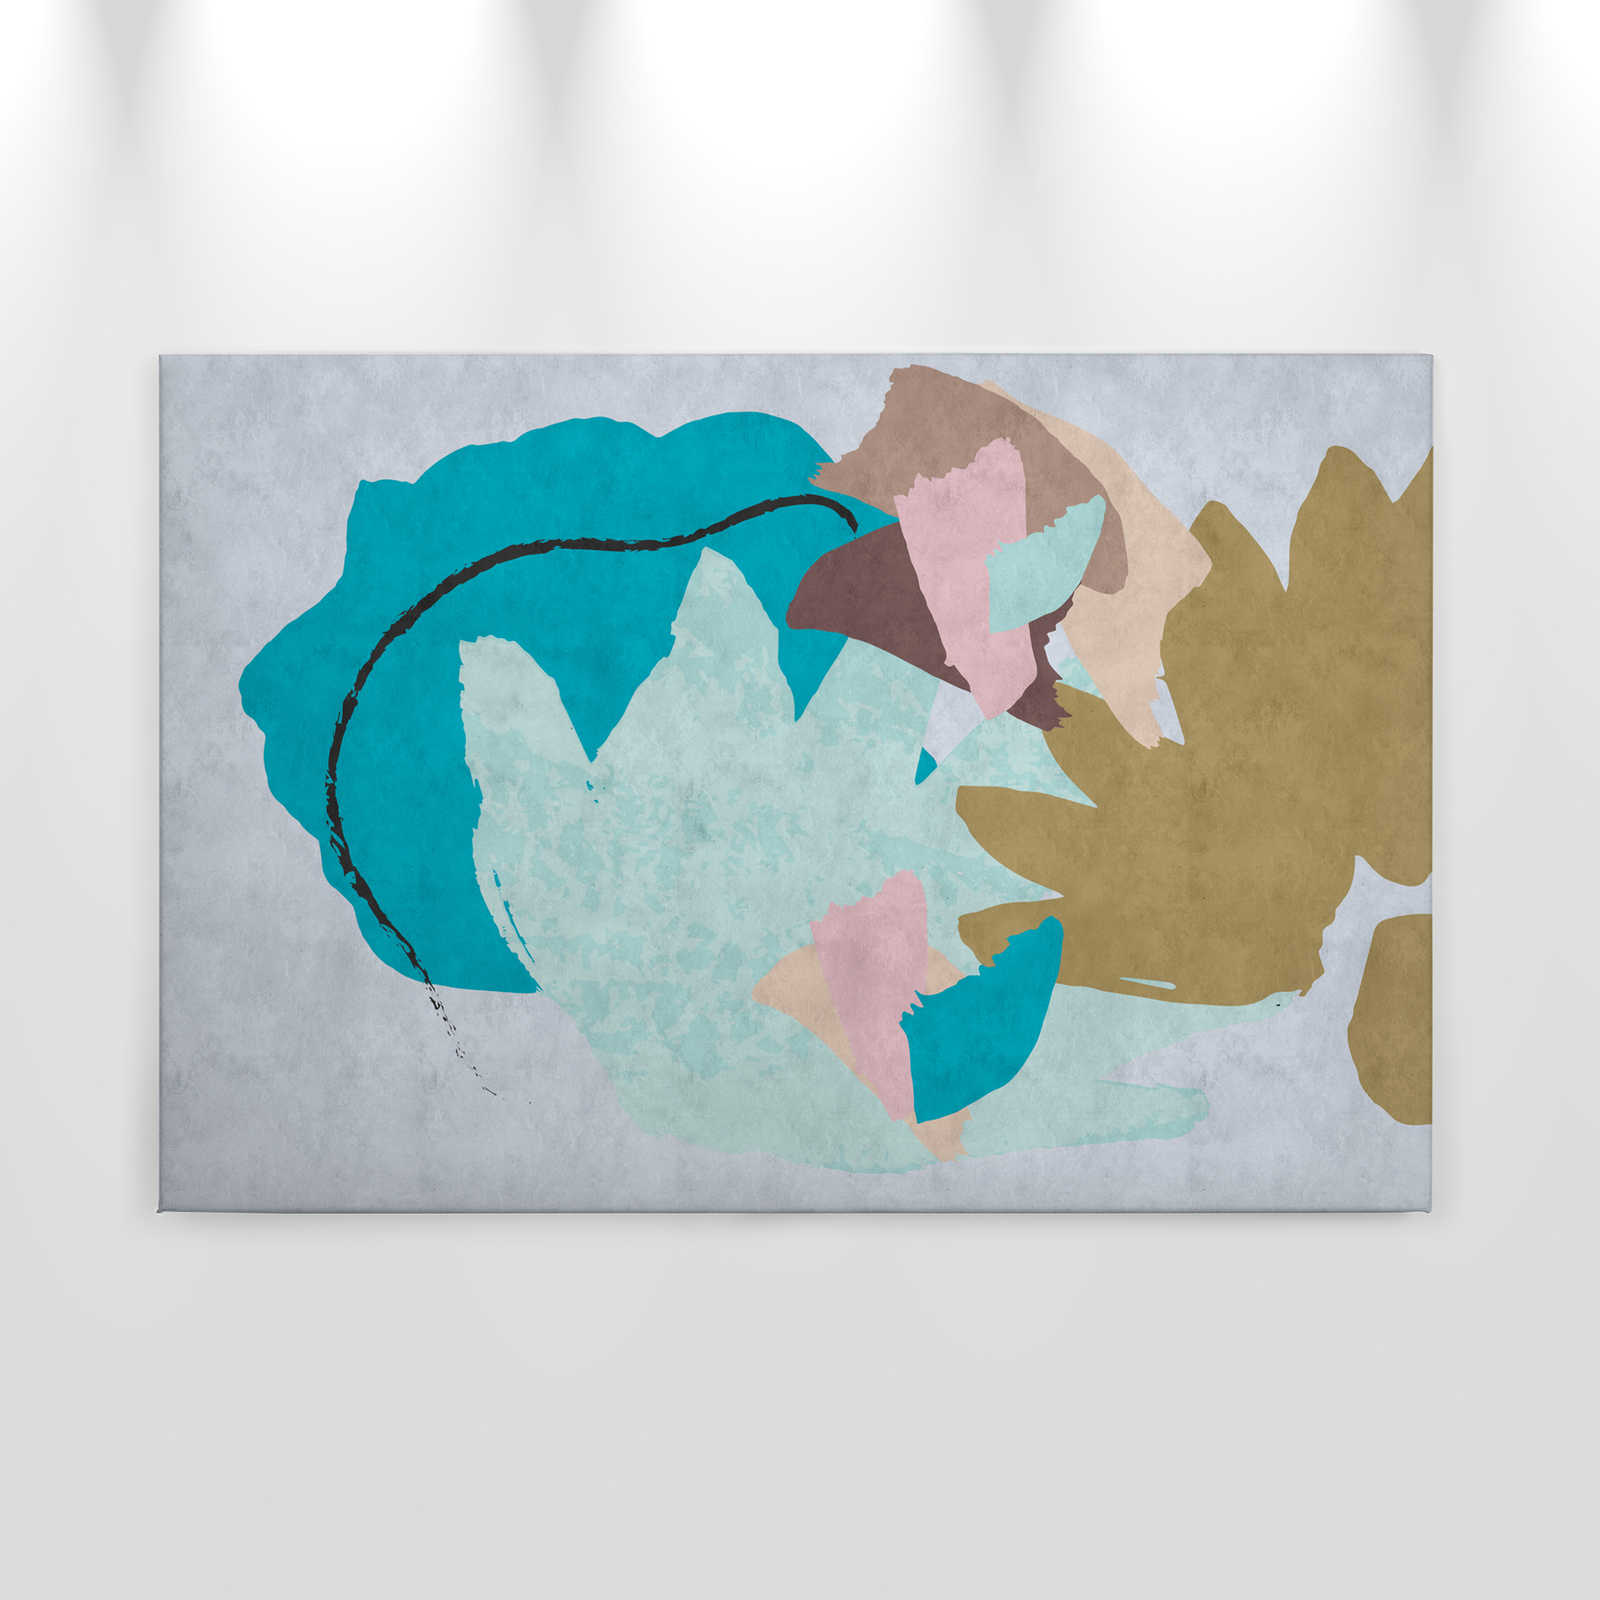             Floral Collage 1 - Abstraktes Leinwandbild, bunte Kunst- Löschpapier Struktur – 0,90 m x 0,60 m
        